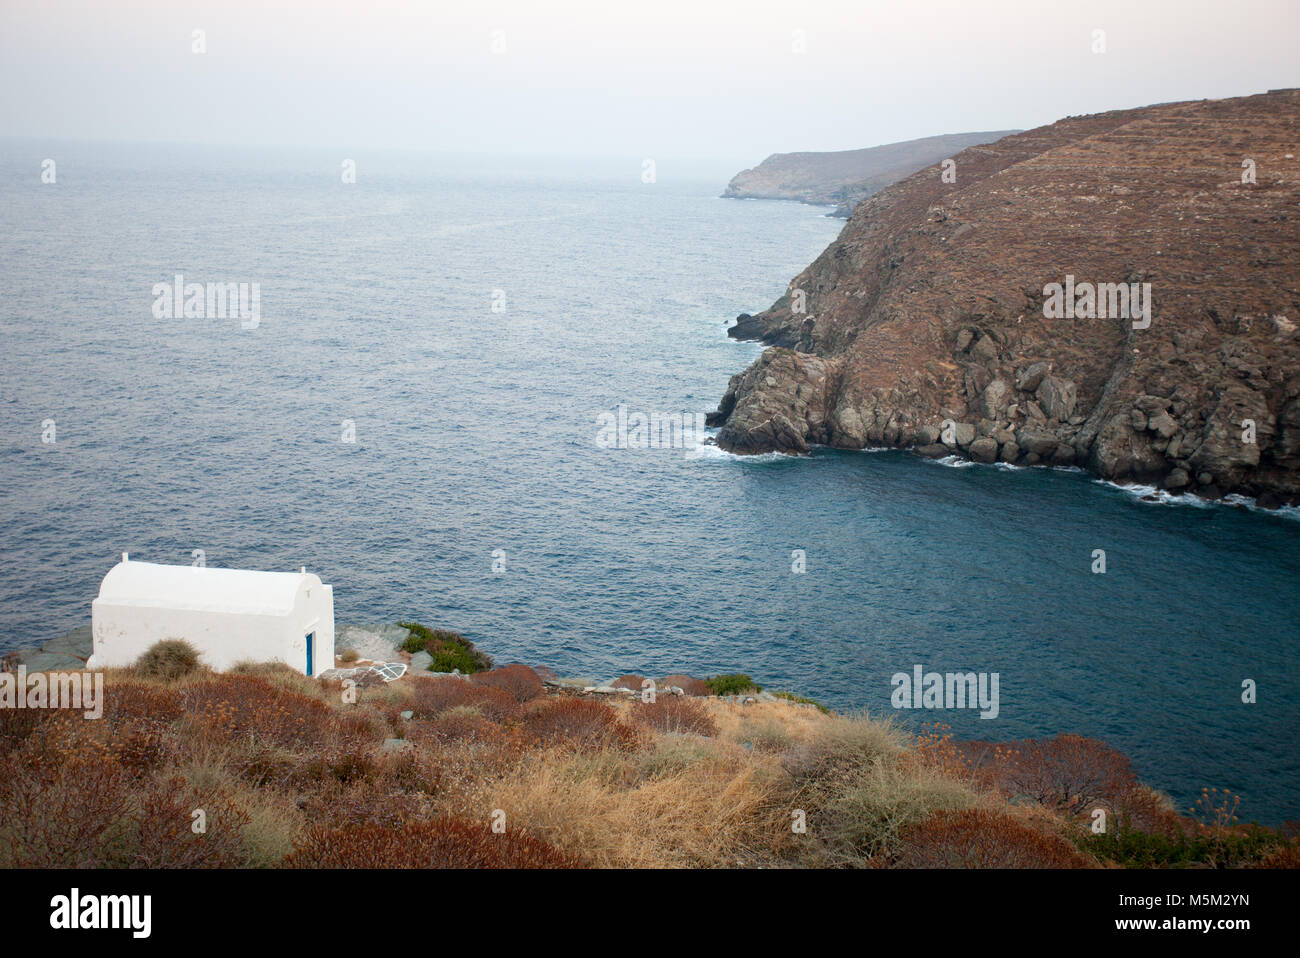 Una chiesa dipinta di bianco, isola di Sifnos, Cicladi Grecia. Mediterraneo colori smorzati Tavolozza dei colori Foto Stock